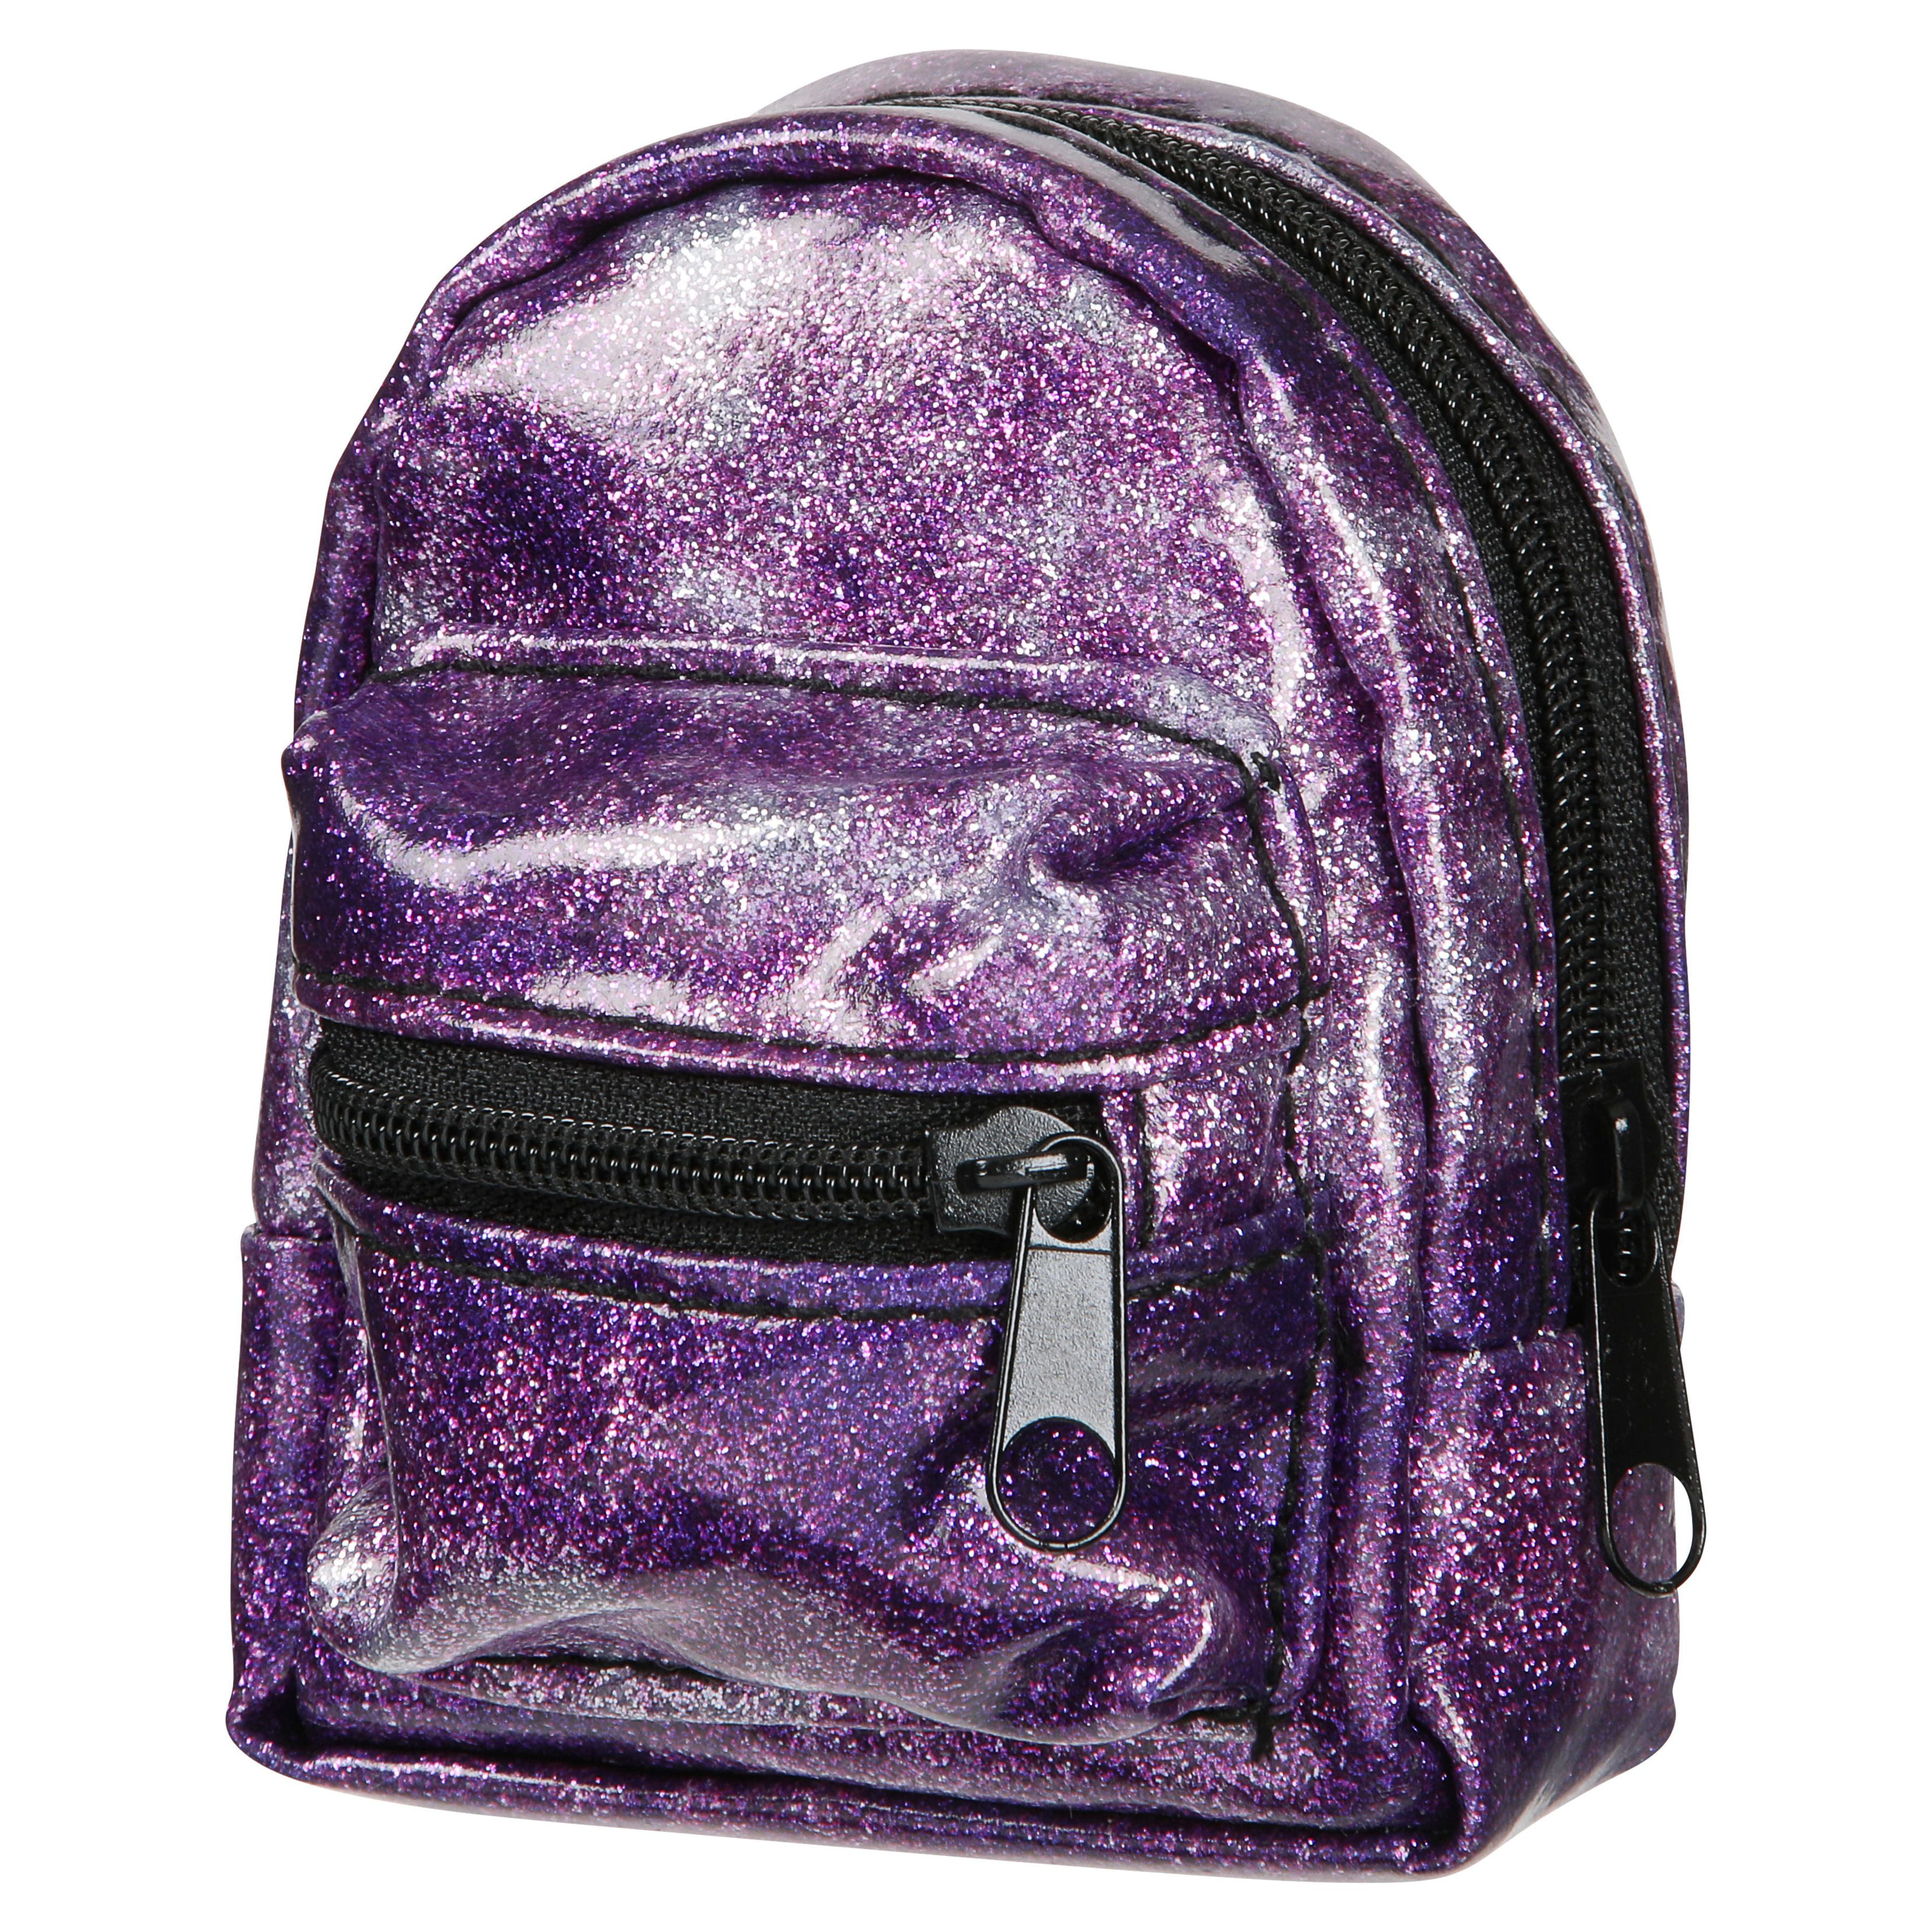 Real Littles Backpack Single Packs – Series 3